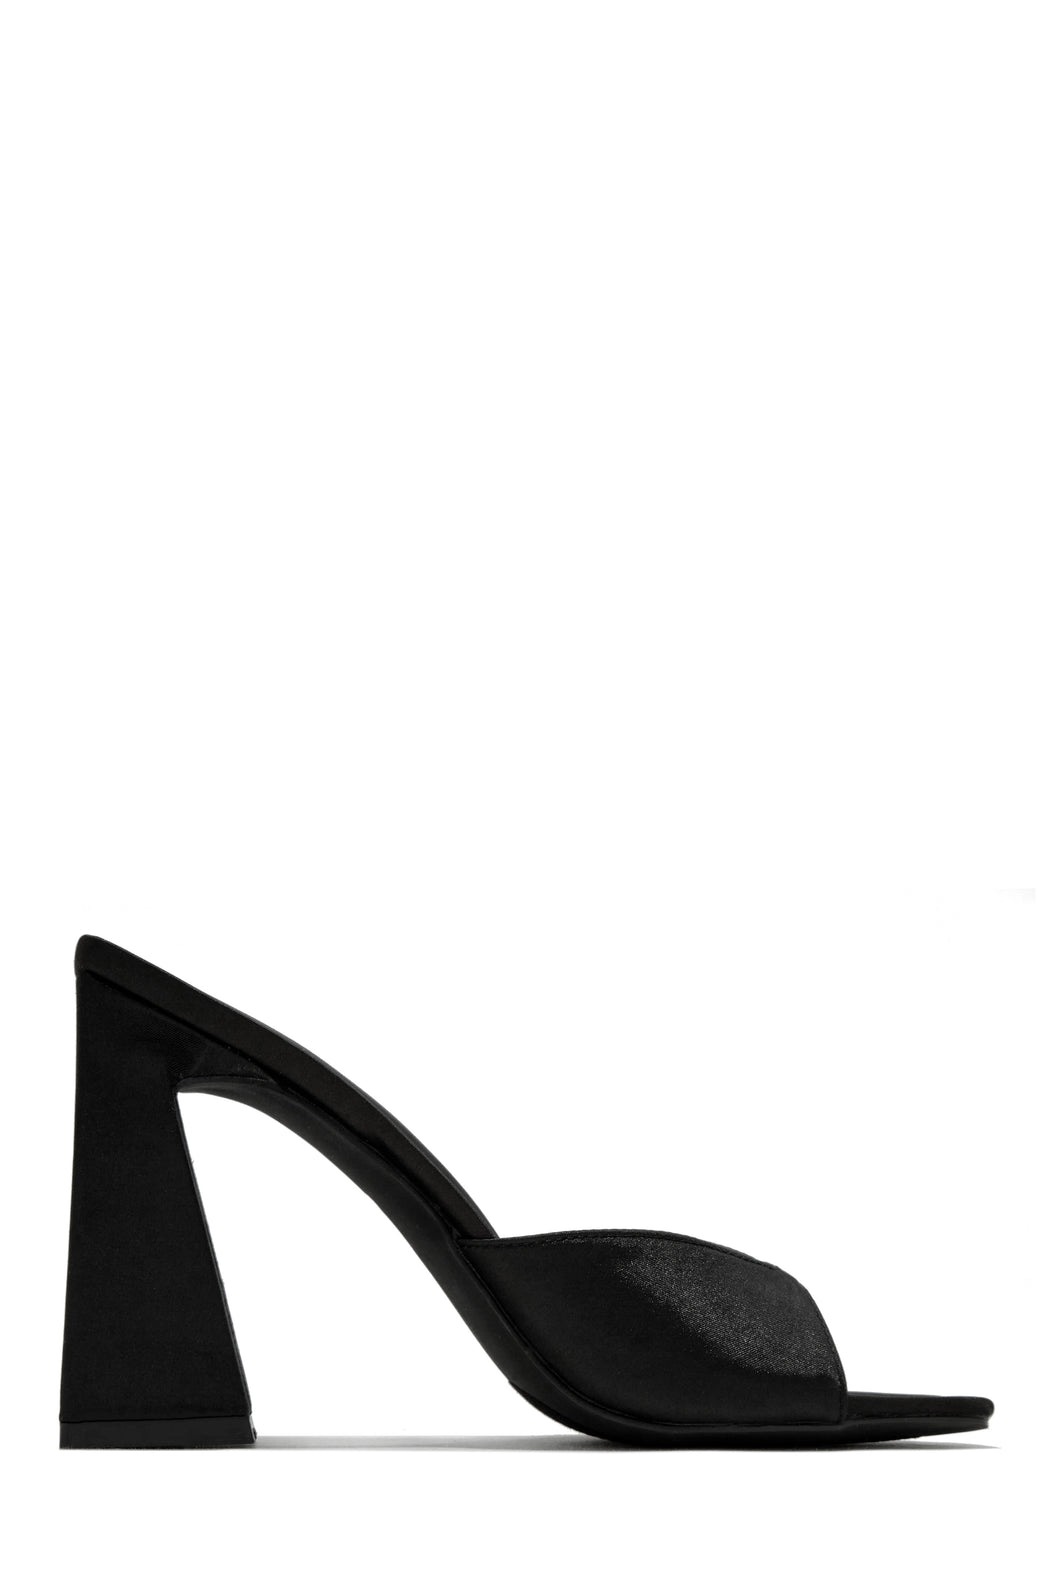 black slip on heel 